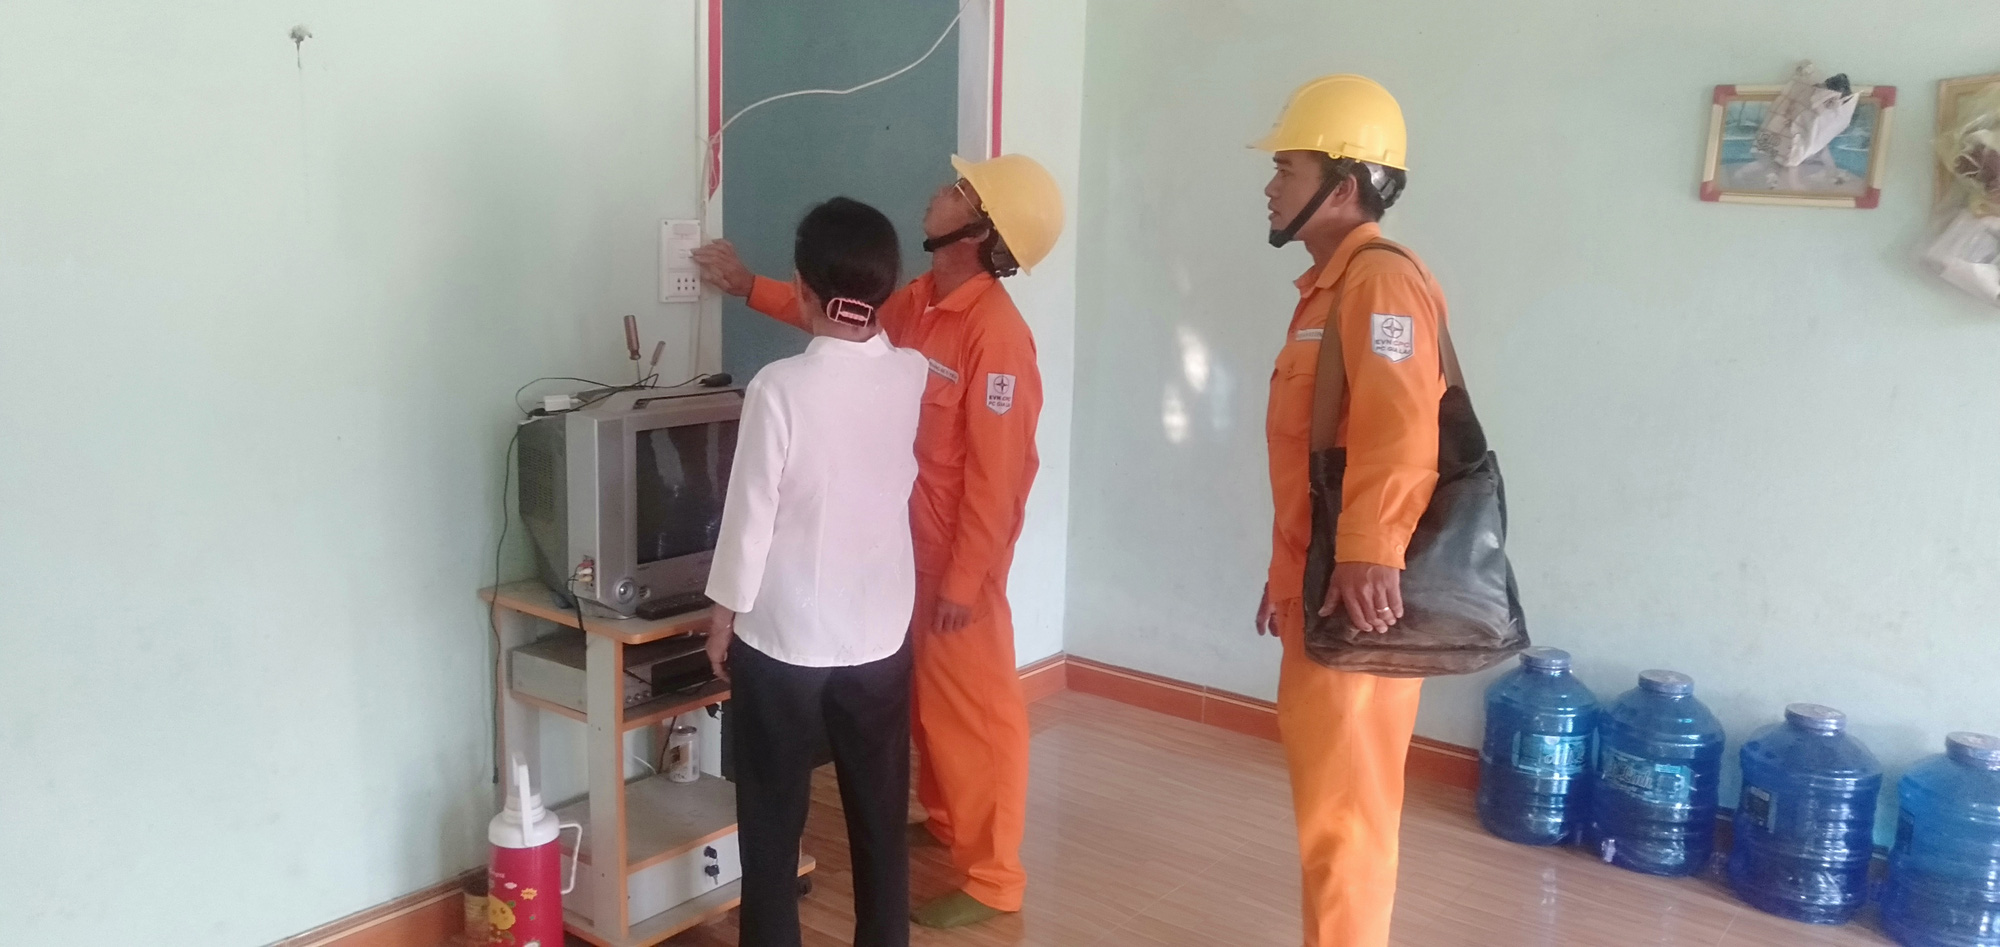 Điện lực Phú Thiện – PC Gia Lai: Nỗ lực chỉnh trang lưới điện, xử lý mất an toàn đường dây sau công tơ - Ảnh 3.